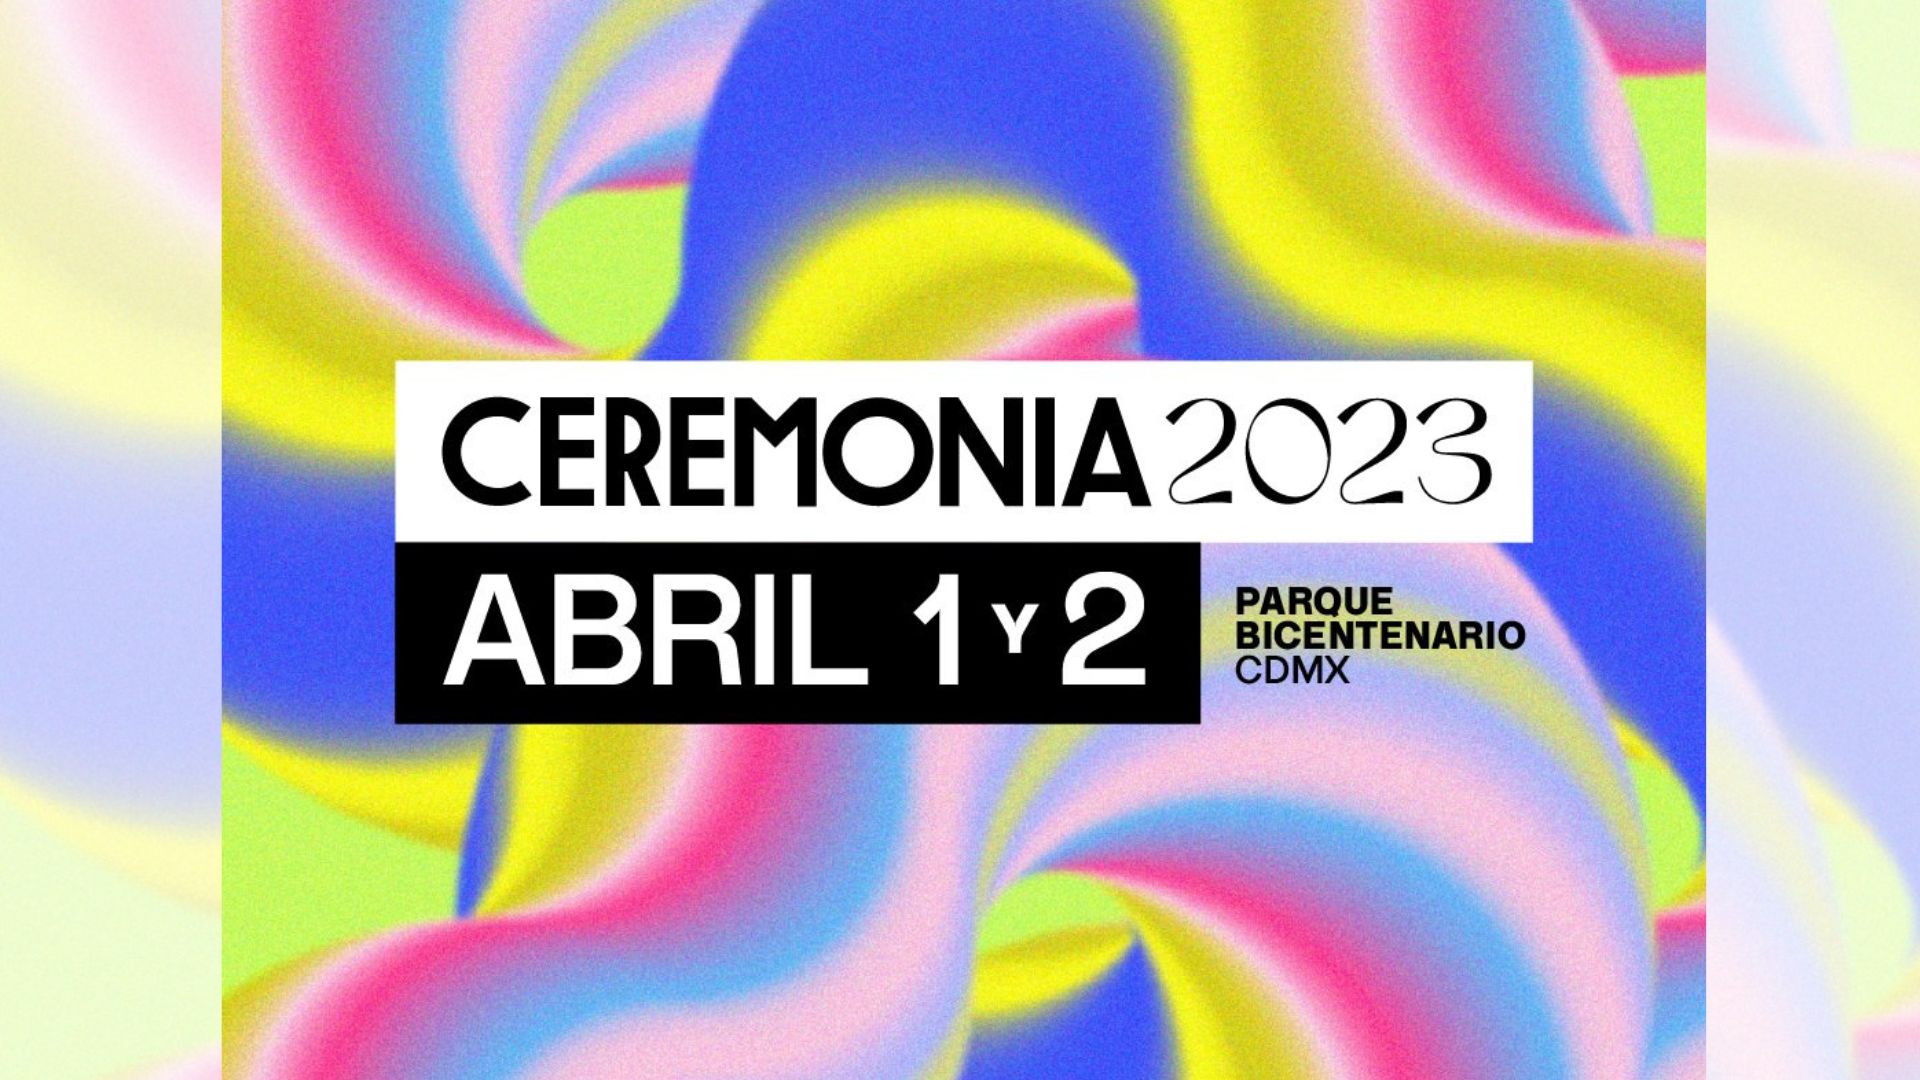 “Ceremonia 2023”: Fecha de preventa, artistas y más